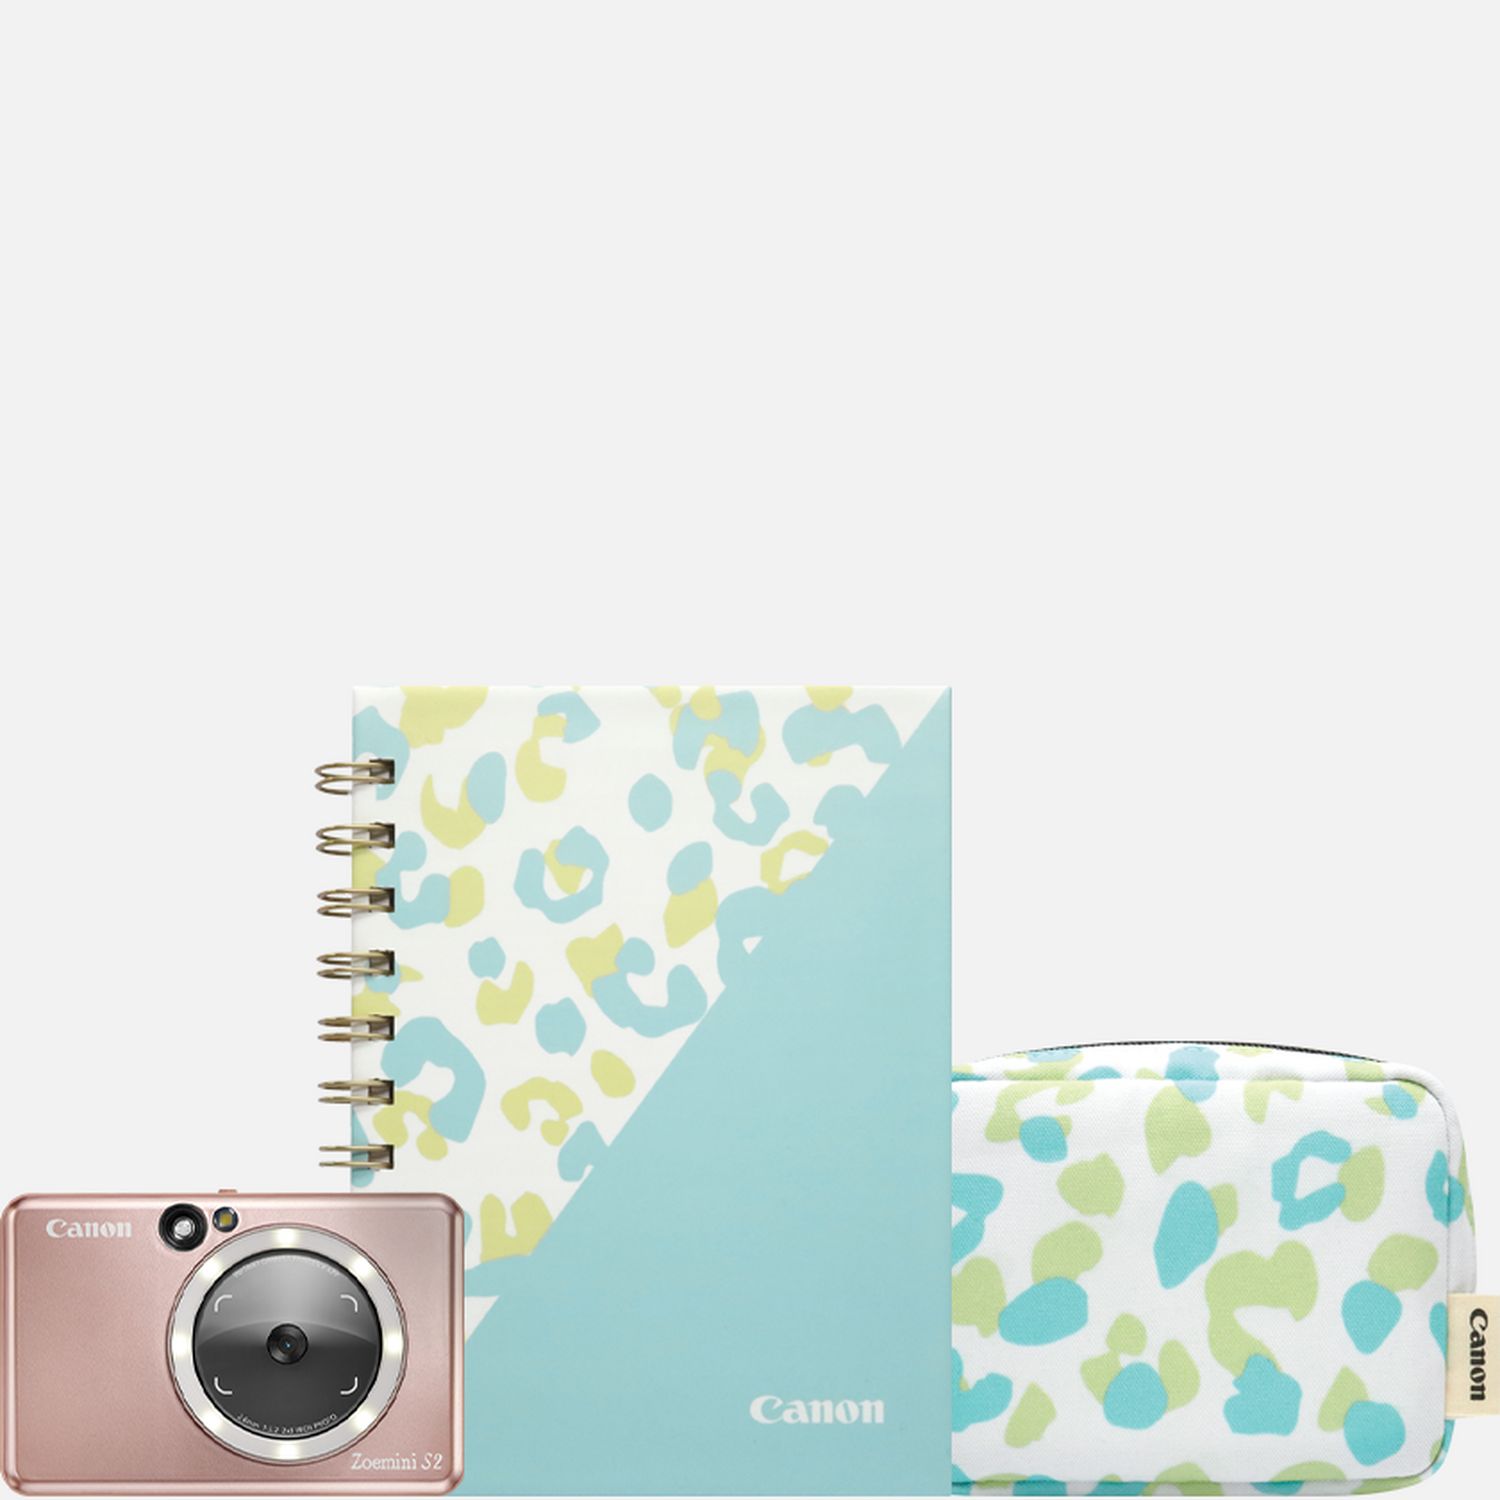 Fotocamera istantanea e stampante fotografica a colori Canon Zoemini S2 (oro rosa), diario e custodia